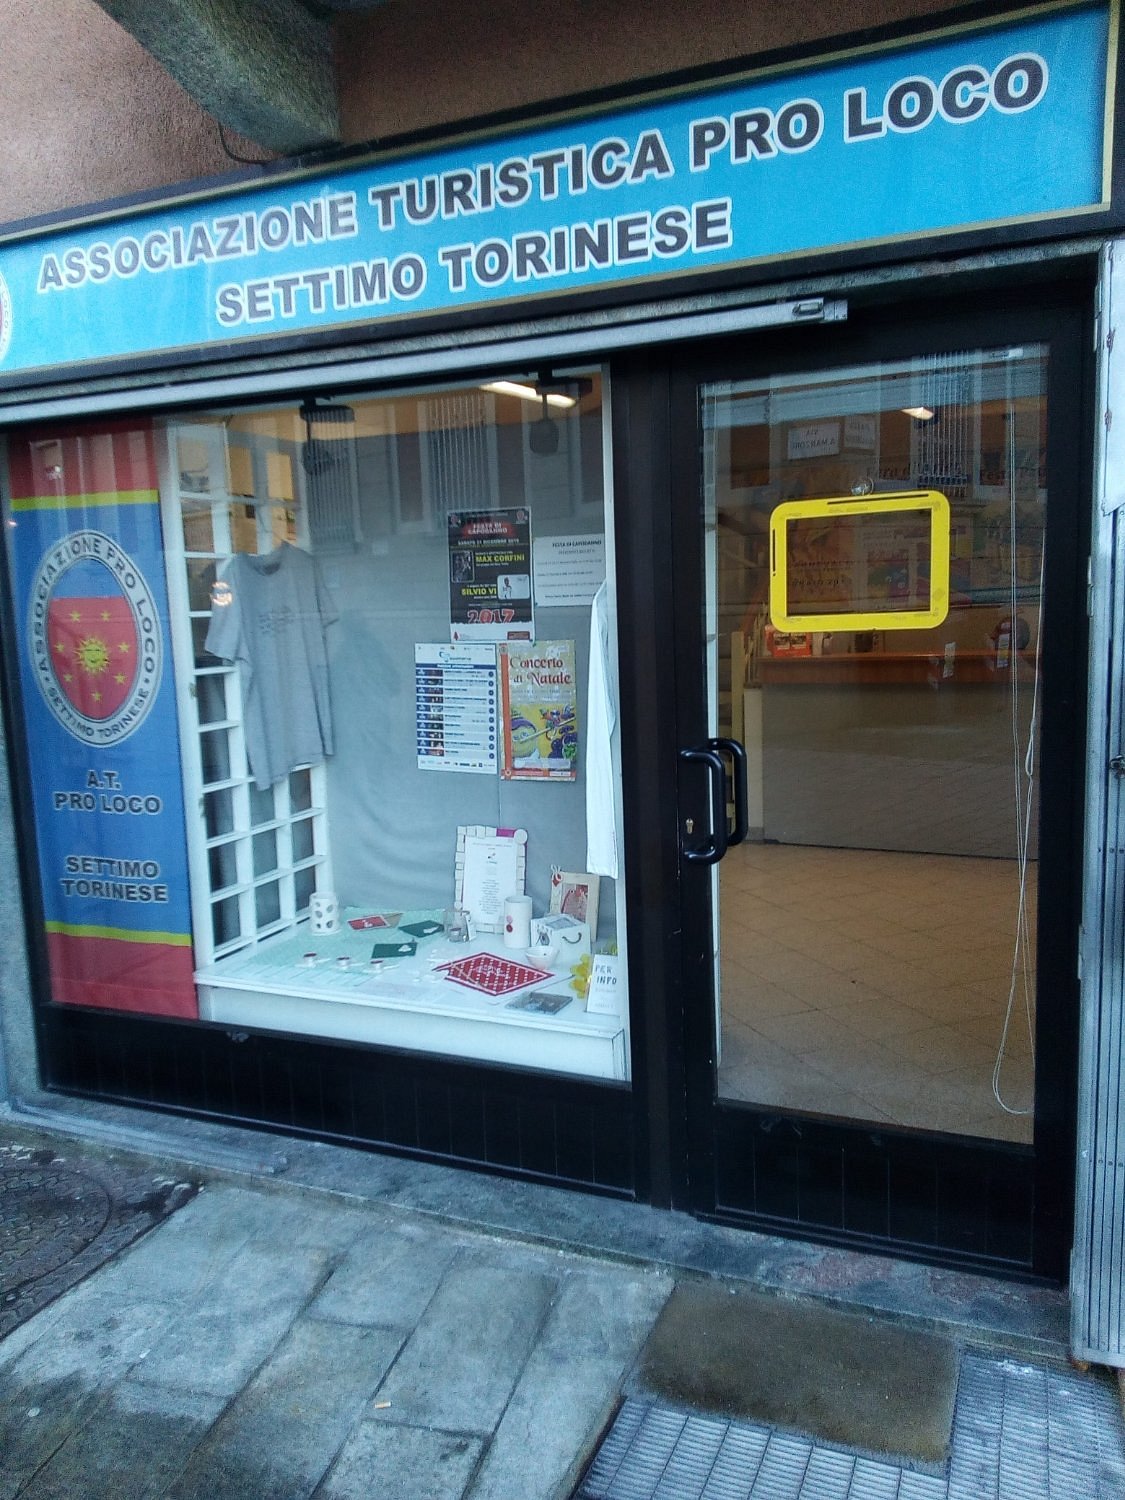 Associazione Turistica Pro Loco Settimo Torinese - 2021 All You Need to ...